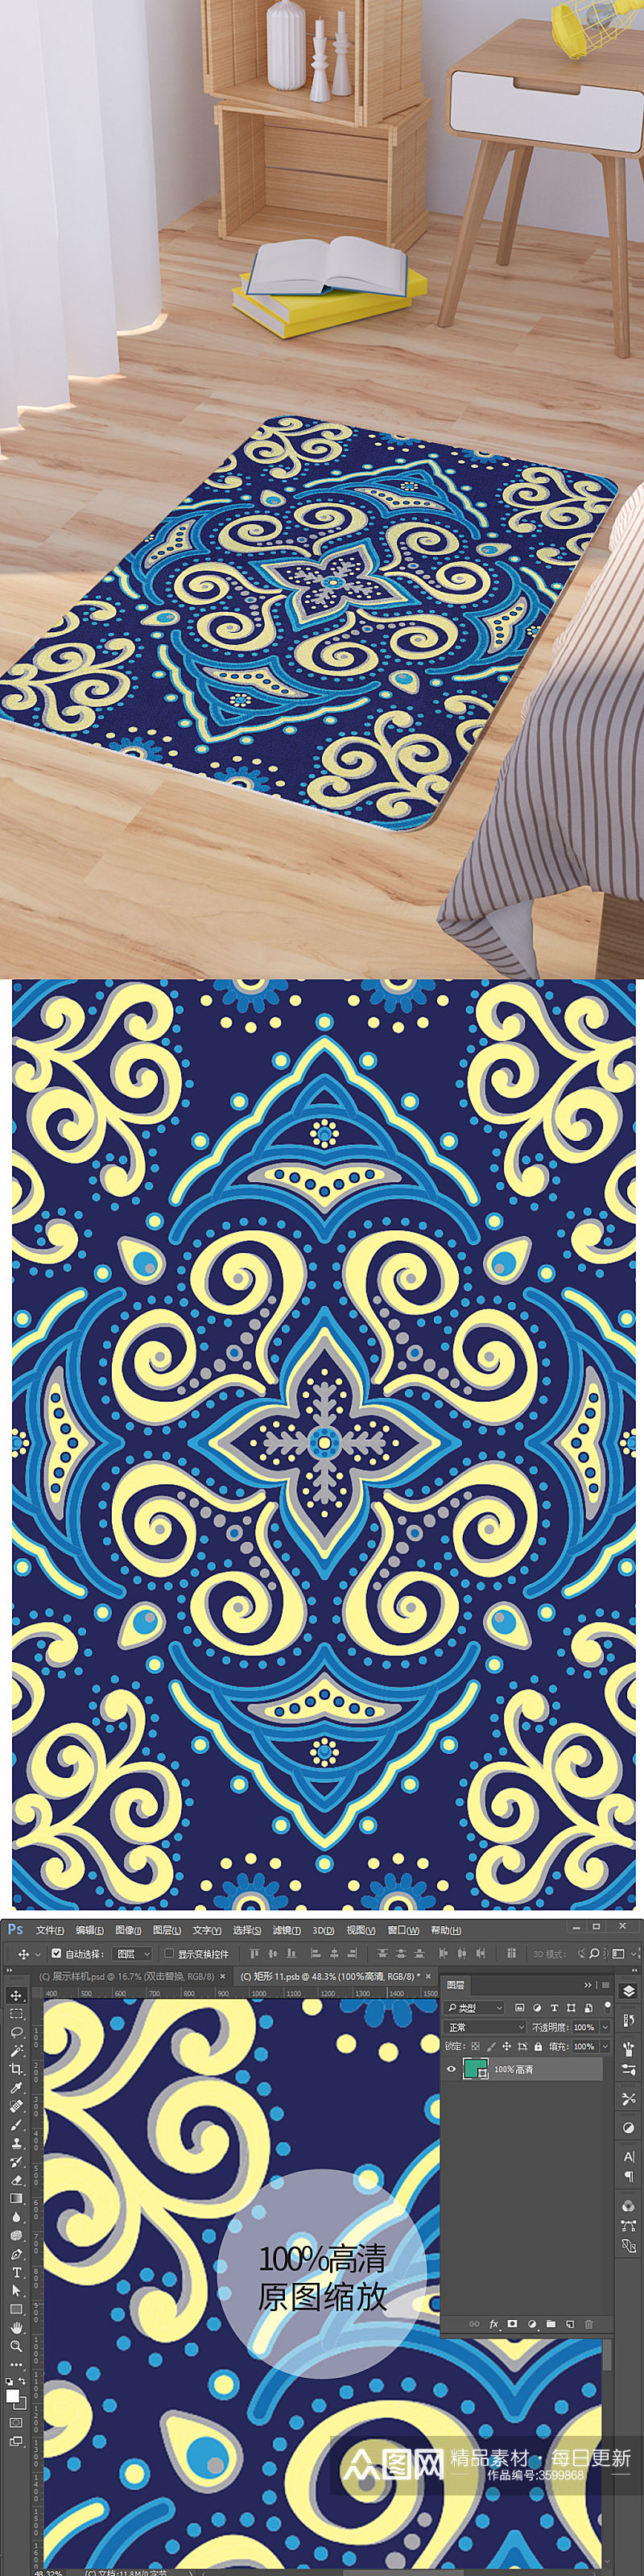 矢量蓝色中式纹理手绘脚垫地毯图案素材